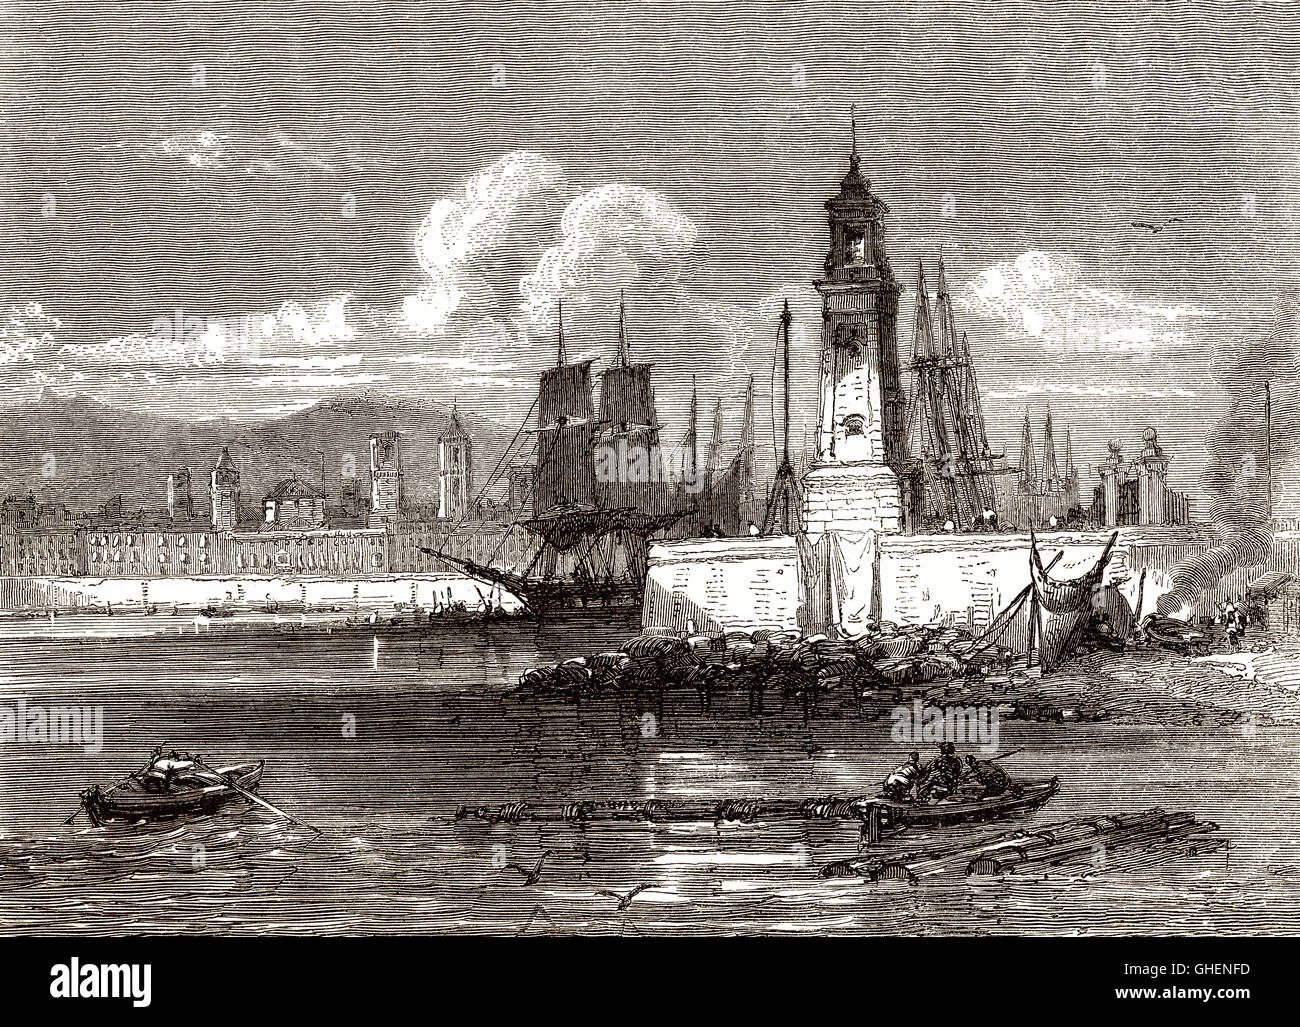 Le vieux phare, port de Barcelone, Espagne, 18e siècle Banque D'Images